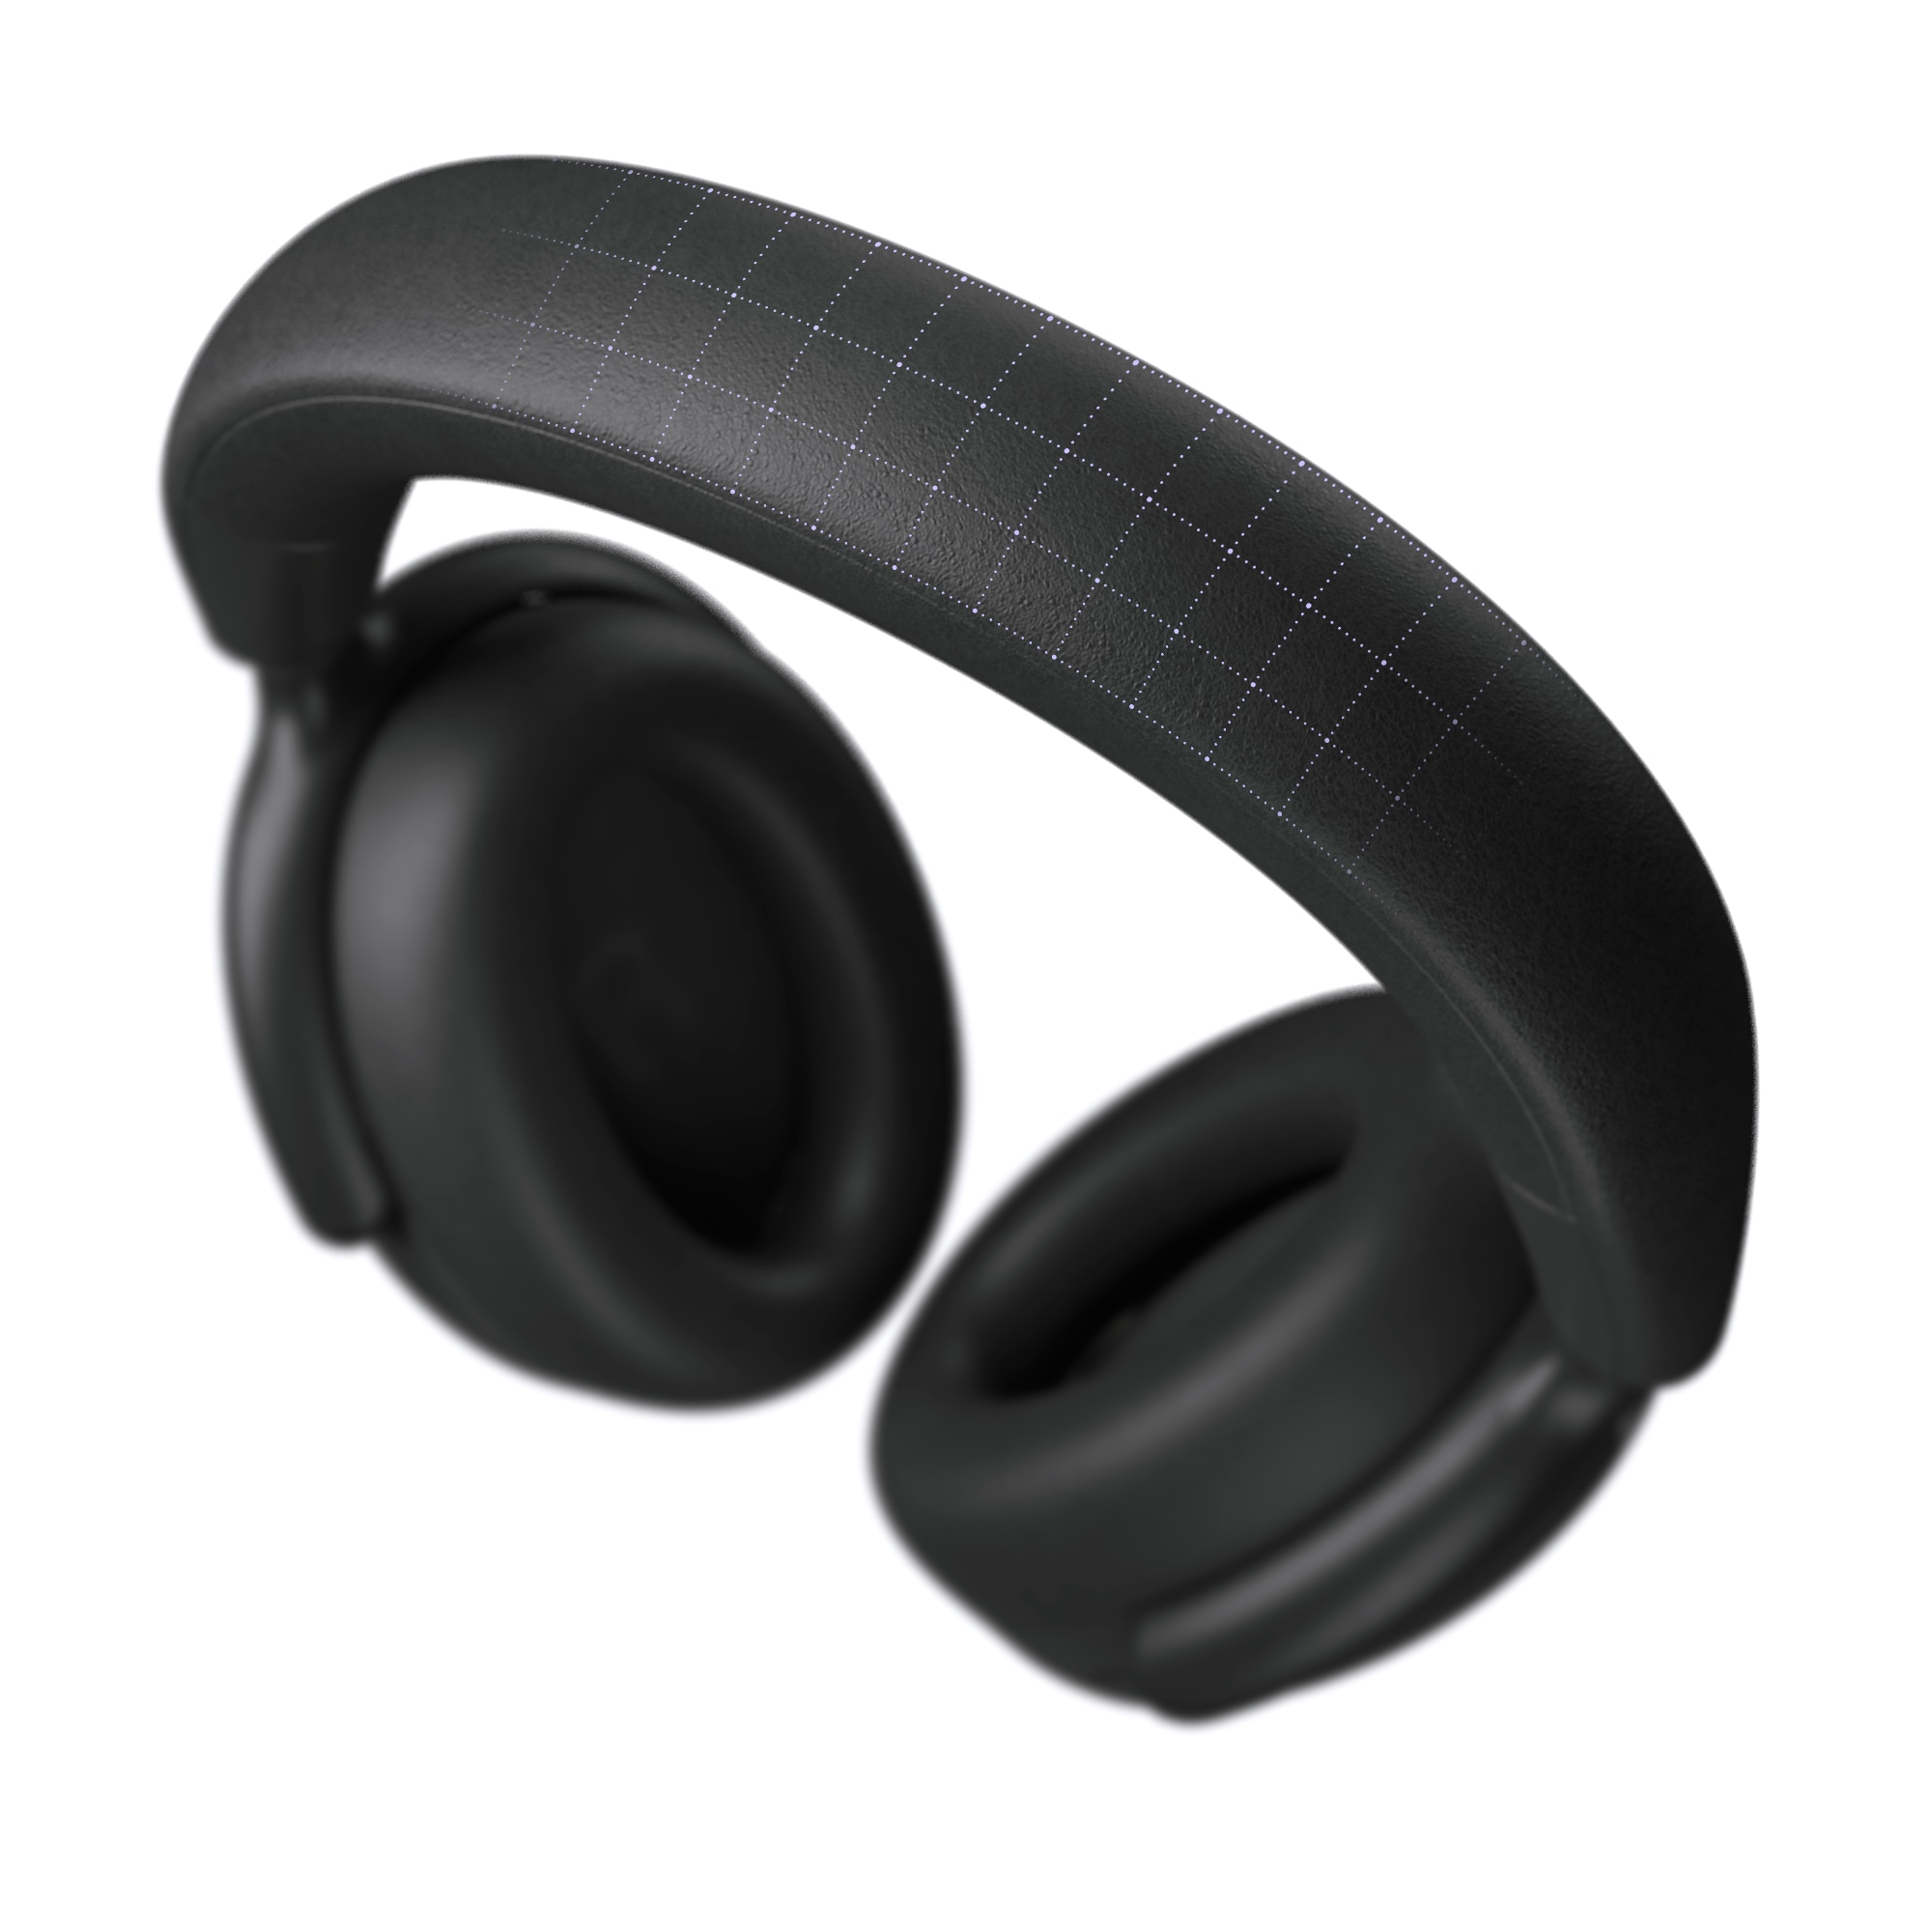 Casque d’écoute sans fil Dell Premier – Vidéo sur les caractéristiques avancées du casque